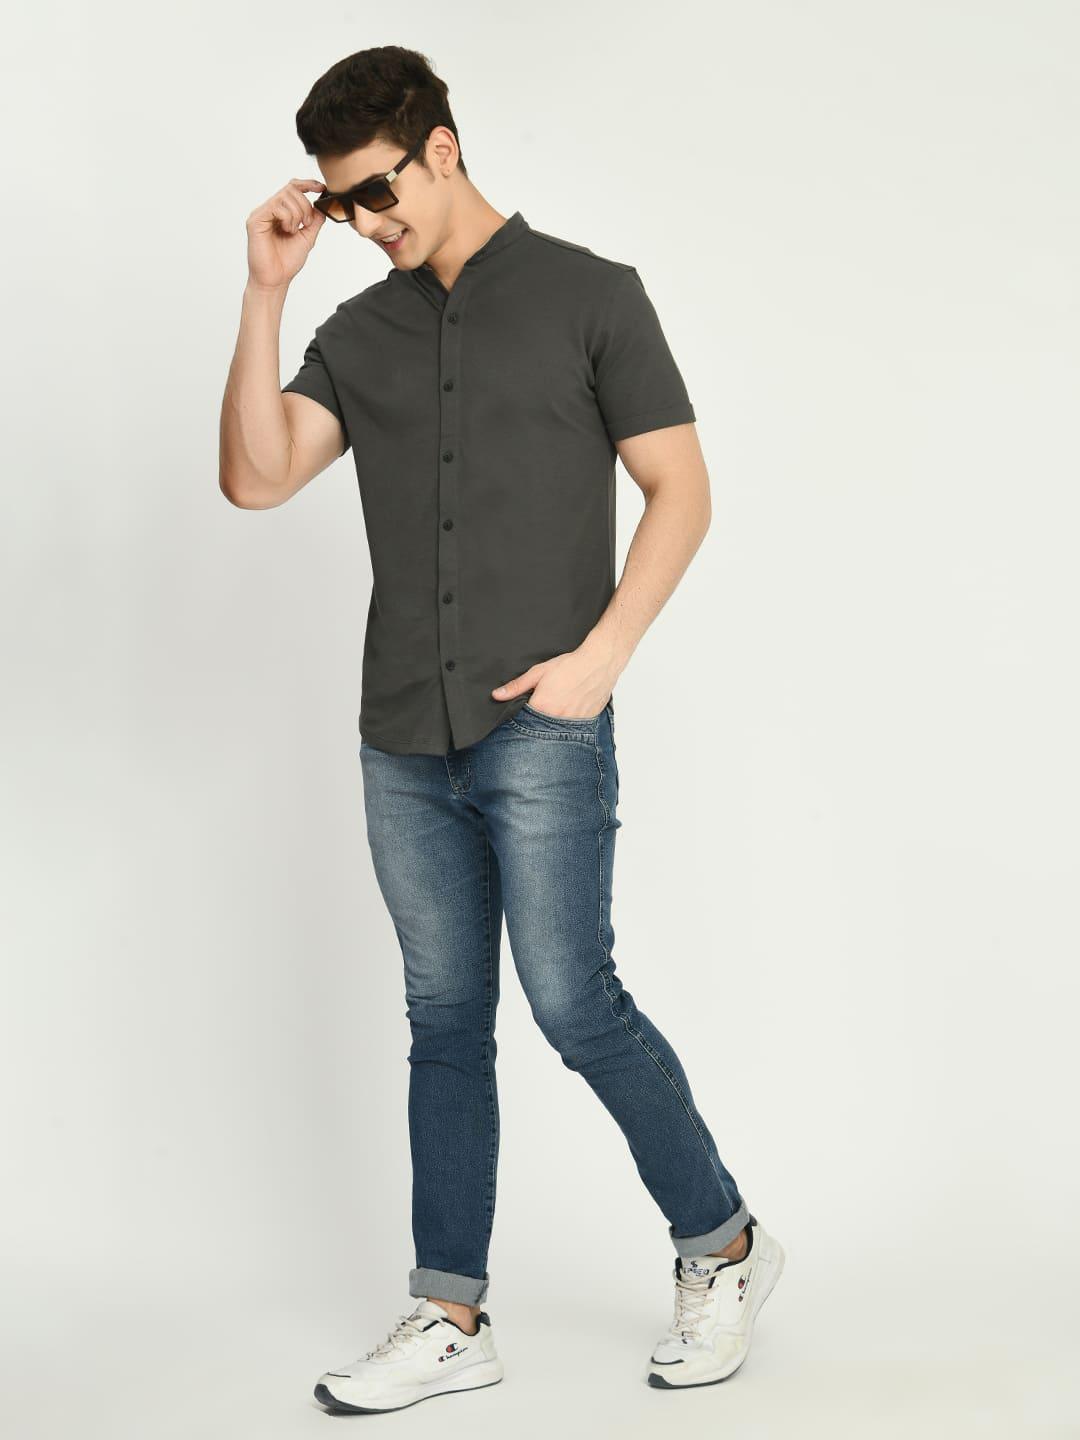 Men's Solid Dark Grey Mandarin Collar Shirt